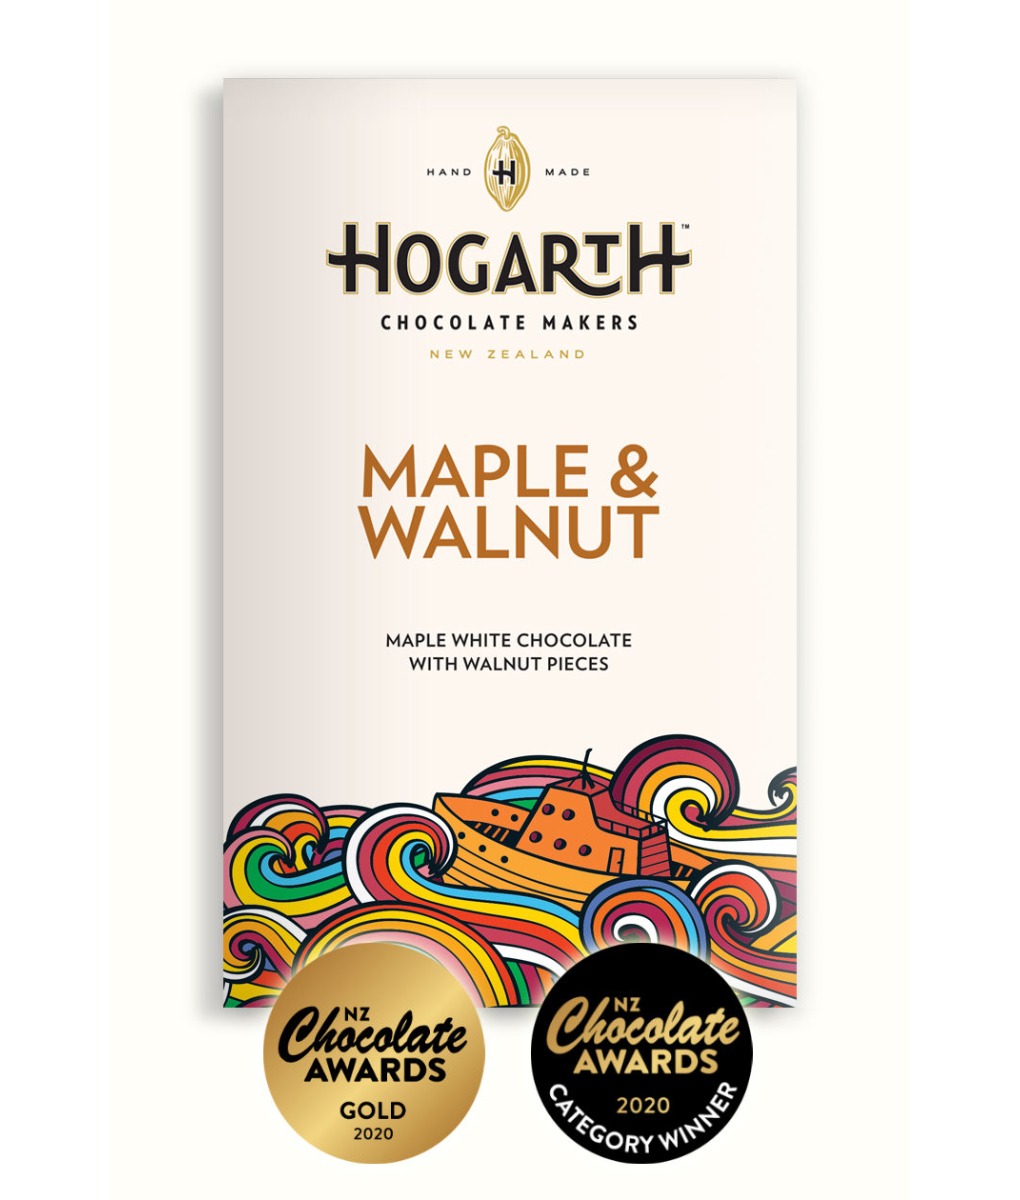 HOGARTH Chocolate | Weiße Schokolade »Maple & Walnut« 34% |  70g